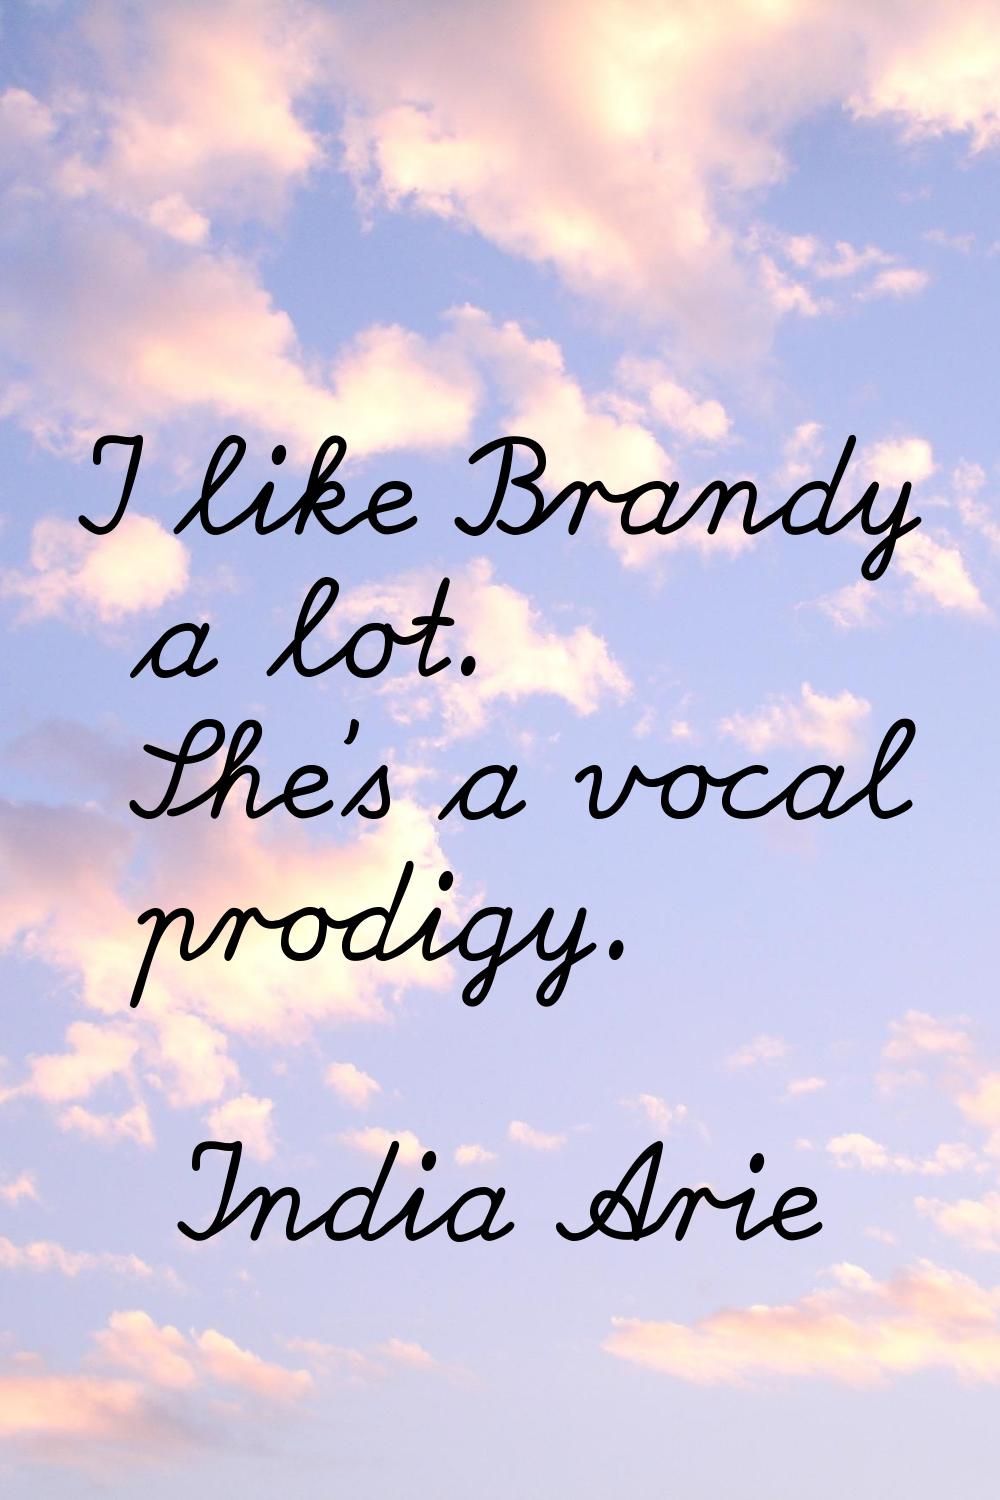 I like Brandy a lot. She's a vocal prodigy.